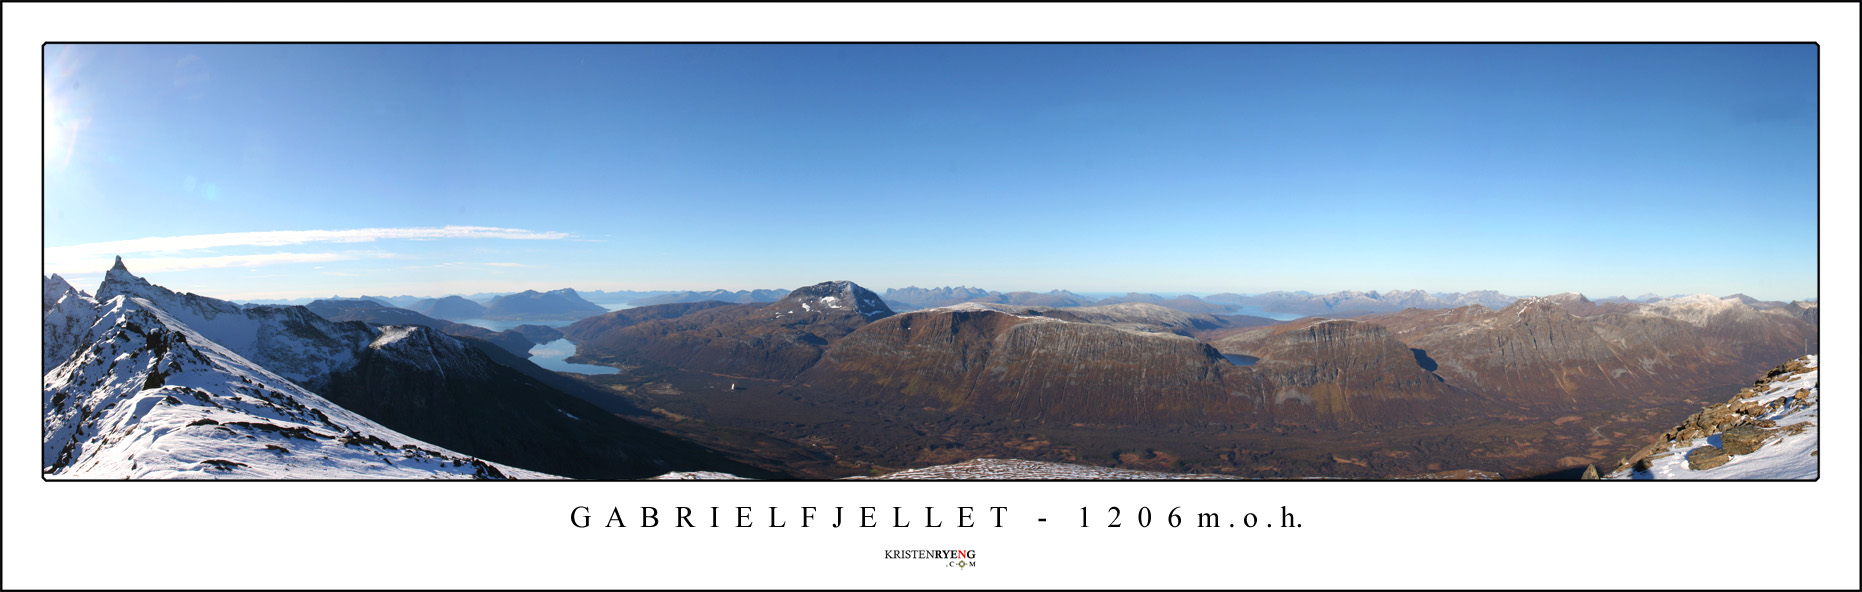 Gabrielfjellet3.jpg - Utsikt mot vest fra Gabrielfjellet. Hamperokken (1404 moh) helt ute til venstre. Dernest følger Ramfjorden, Tromsdalstinden og fjellmassivet på motsatt side av Breivikeidet. Kvaløya og Ringvassøya i bakgrunnen